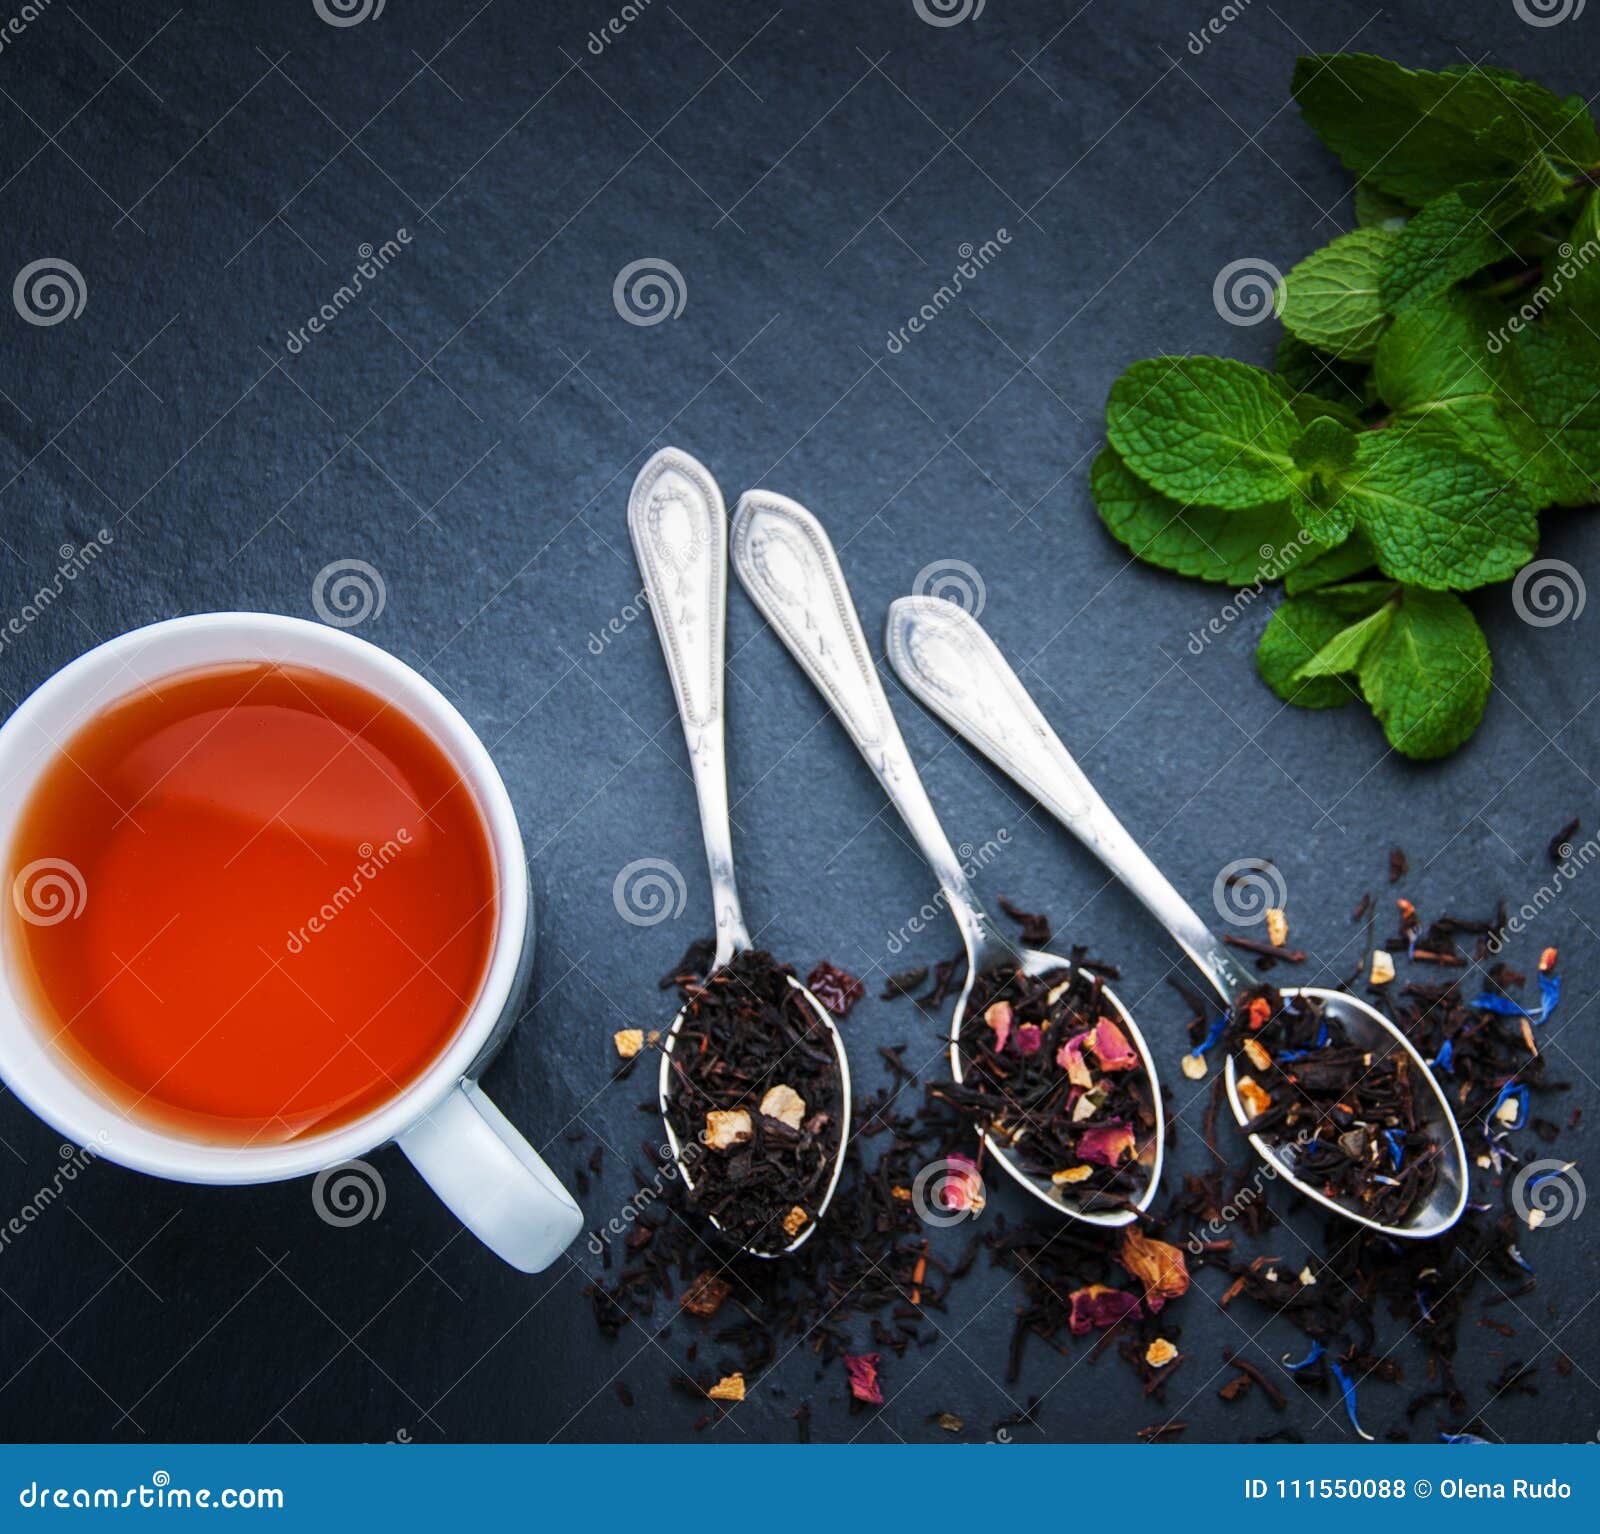 Пью чай с ложкой в кружке. Чай с ложкой. Чайная ложка в кружке. Чай черный с ложечкой. Чайная ложка с чаем.